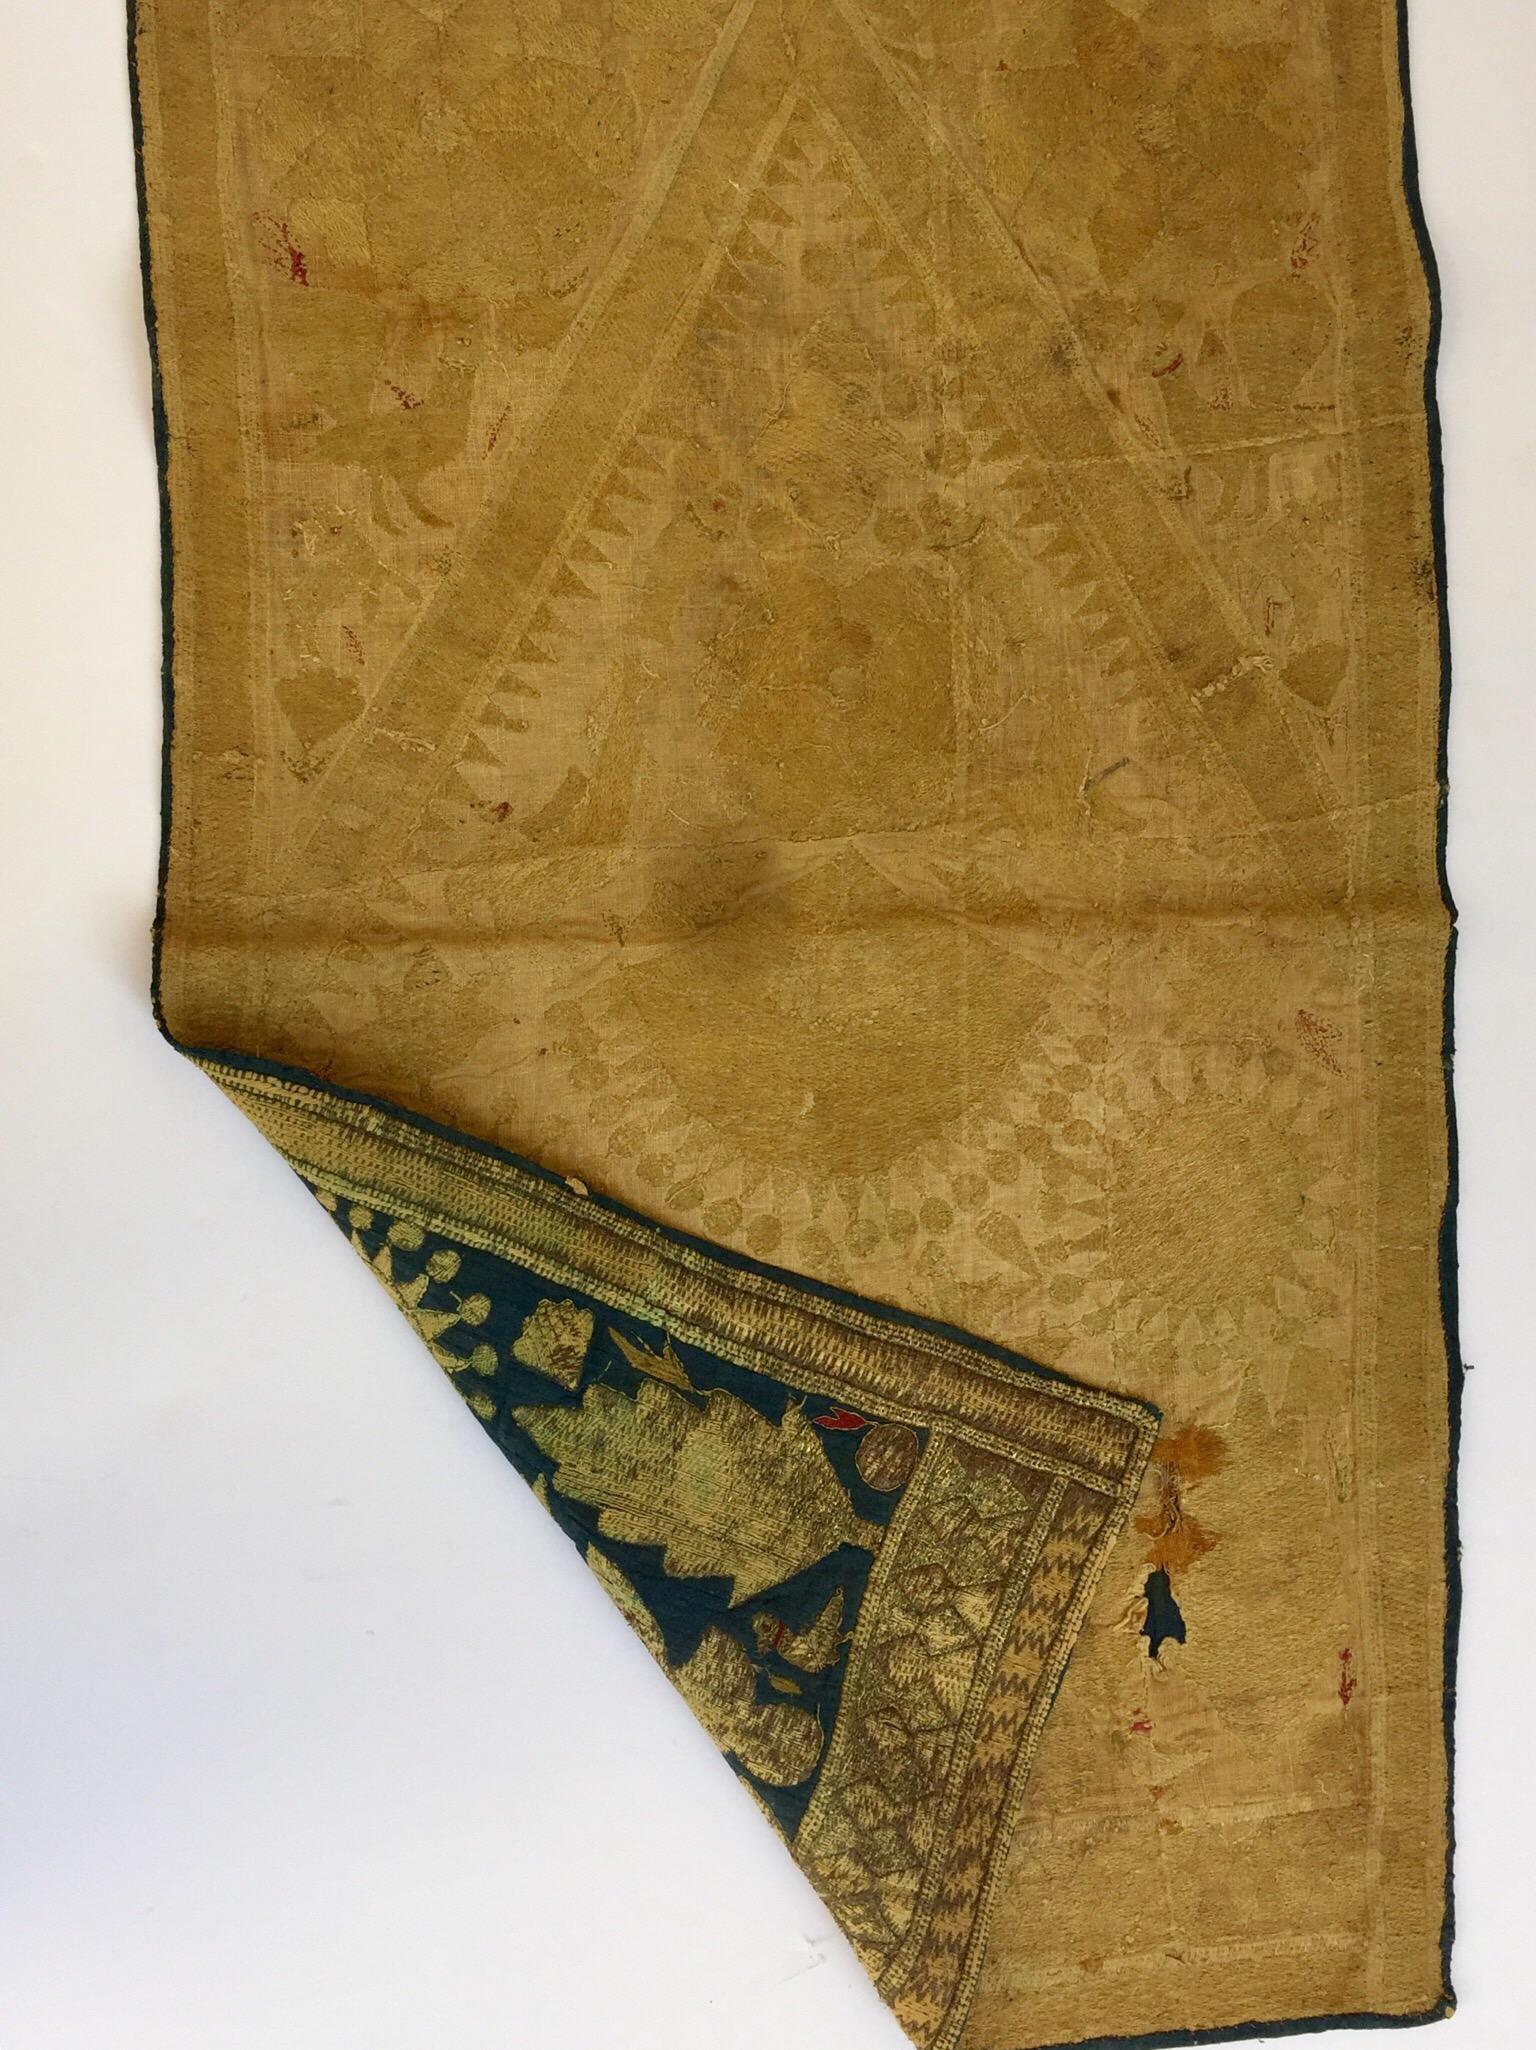 19th Century Moorish Islamic Ottoman Empire Textile Metallic Embroidered 11